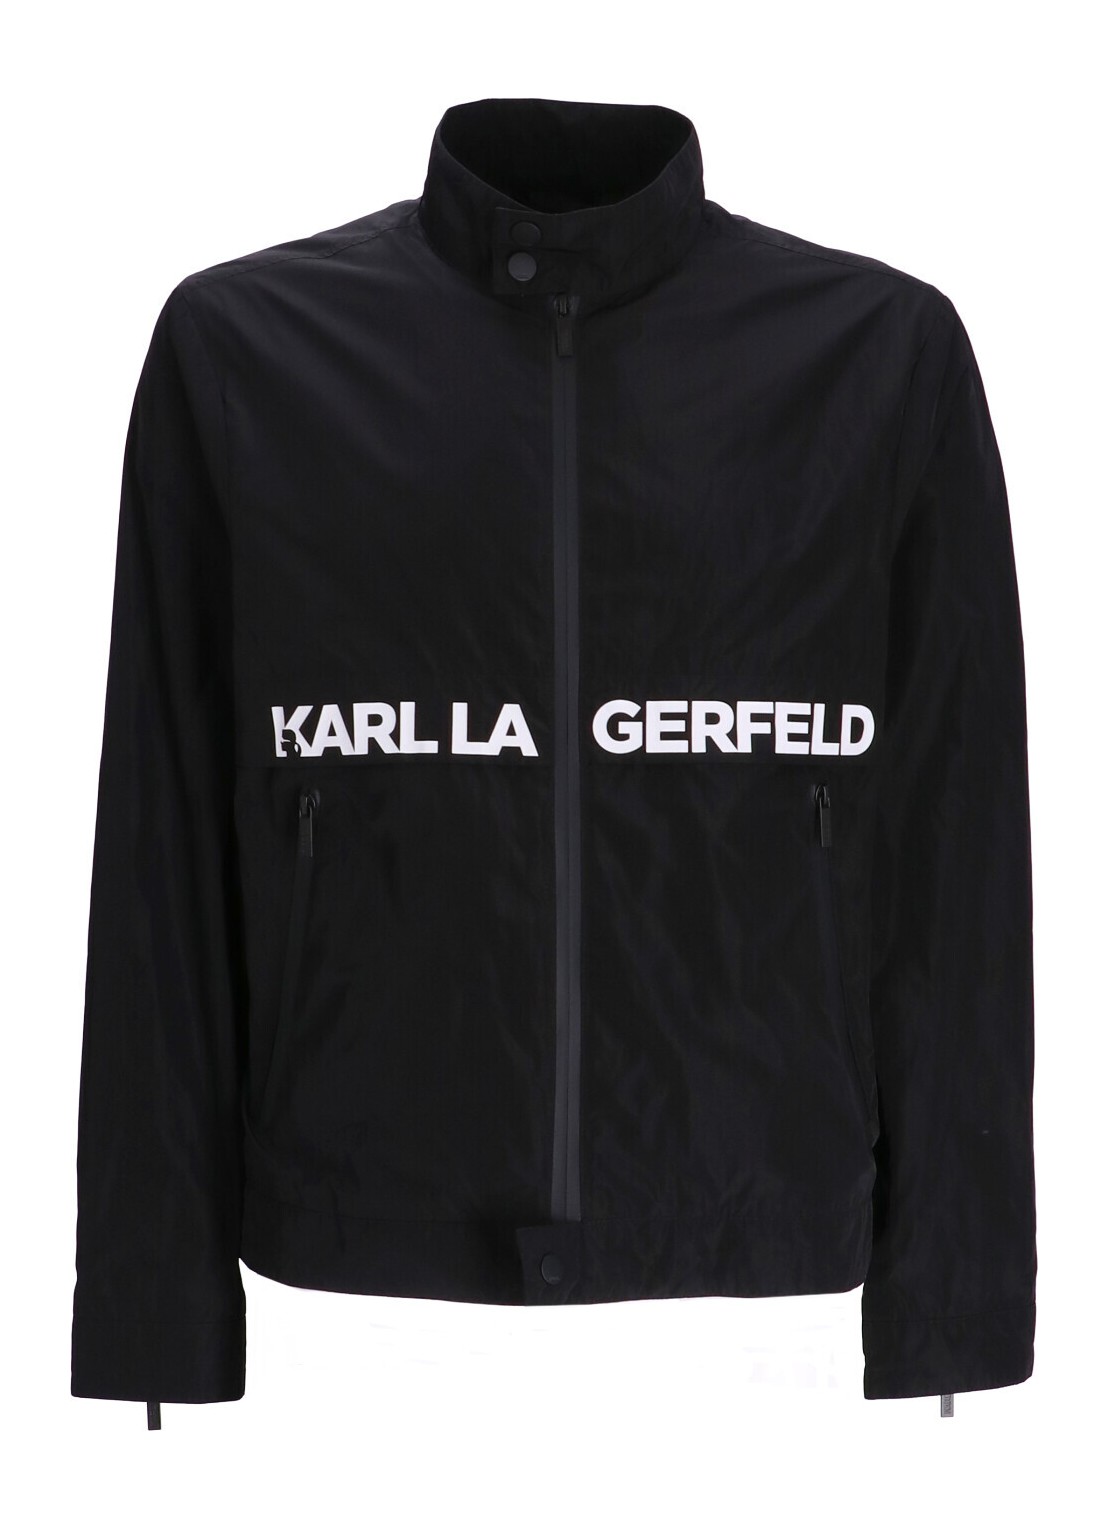 Outerwear karl lagerfeld outerwear man jacket 505081541501 990 talla 52
 